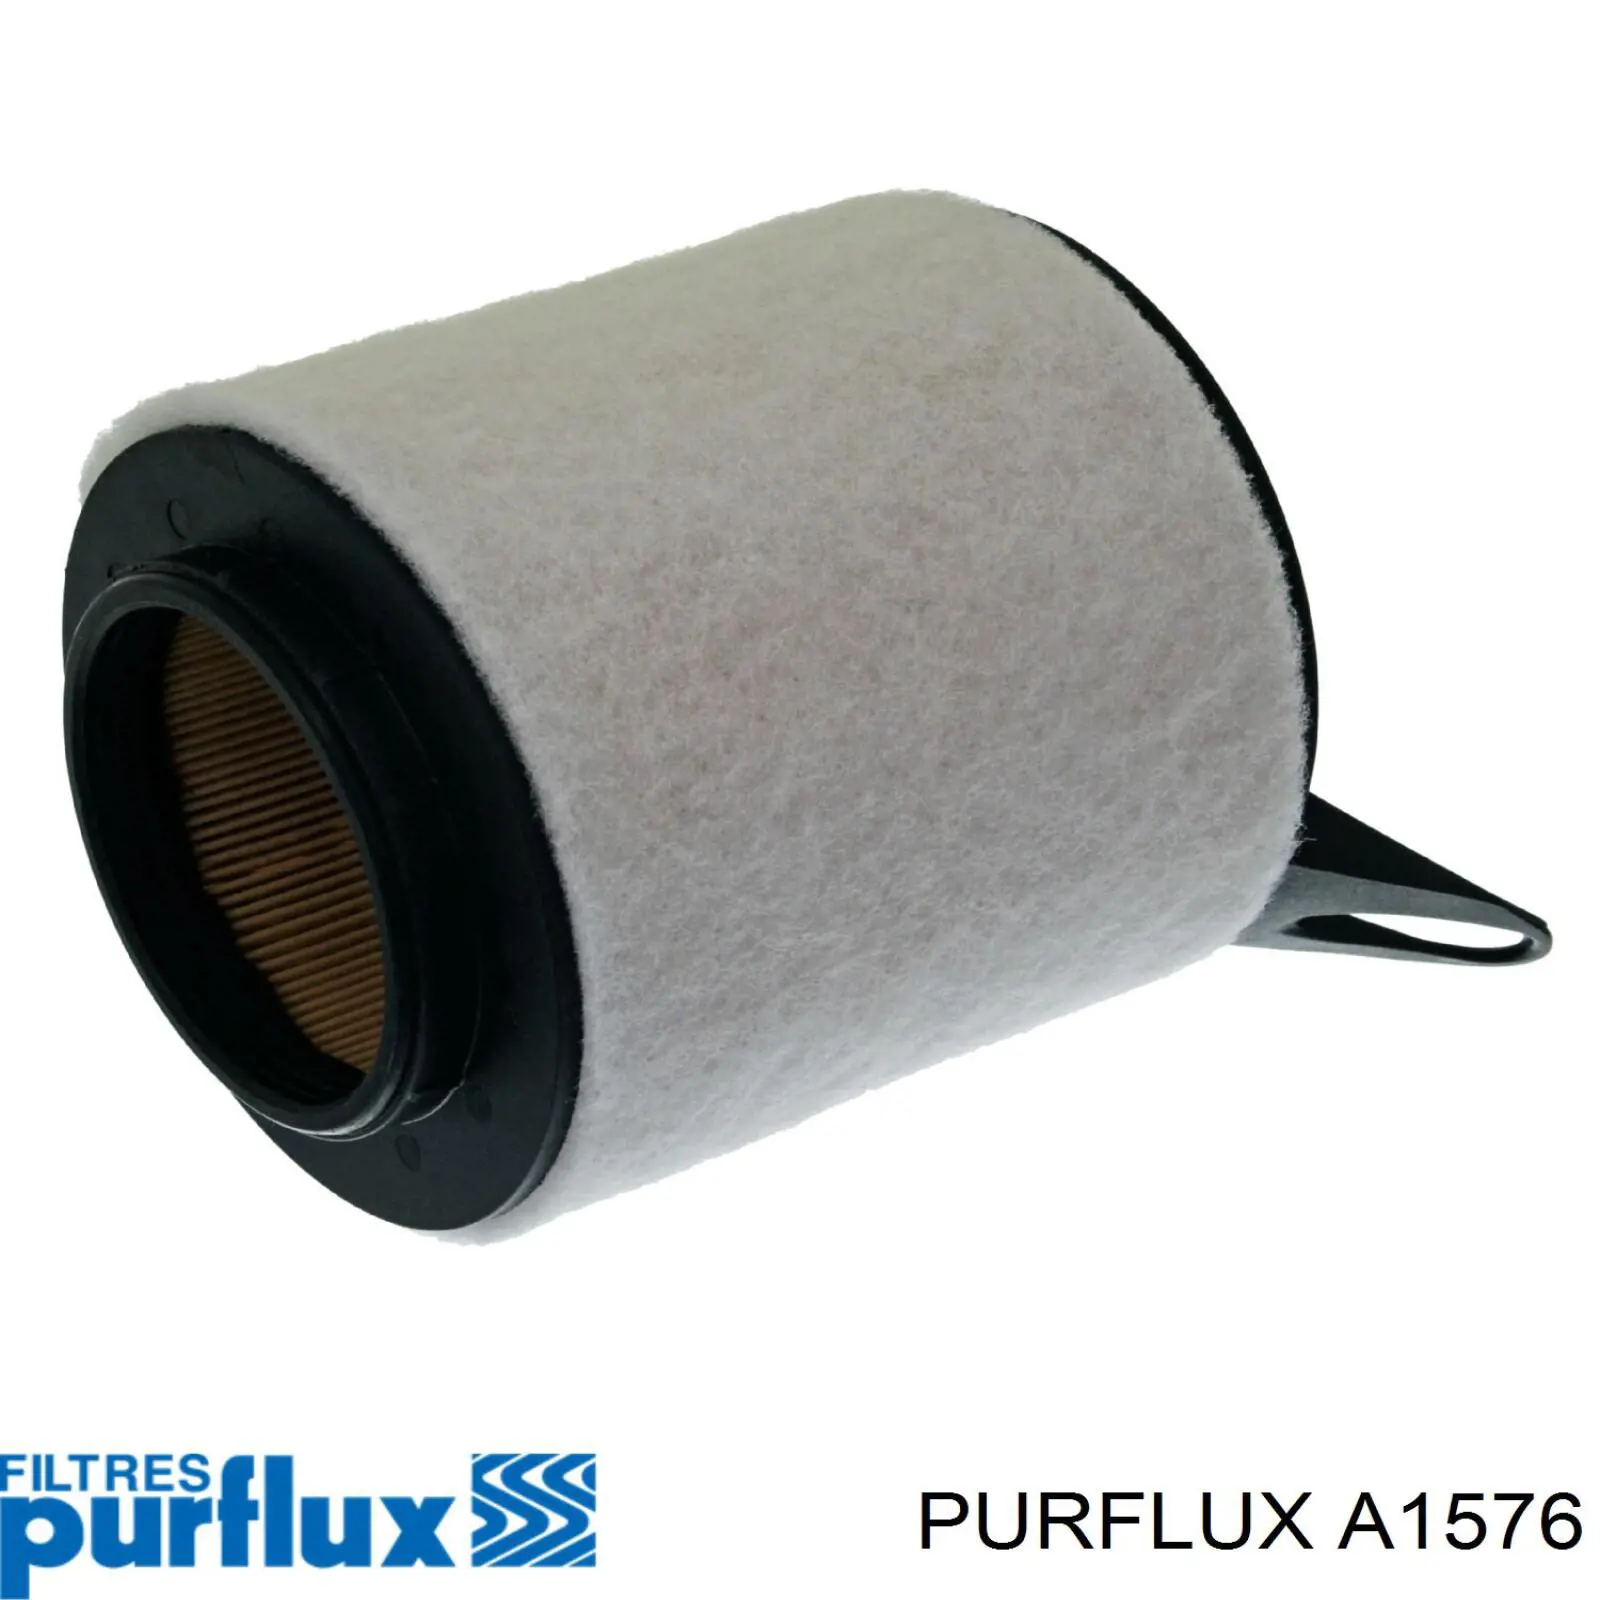 A1576 Purflux filtro de aire